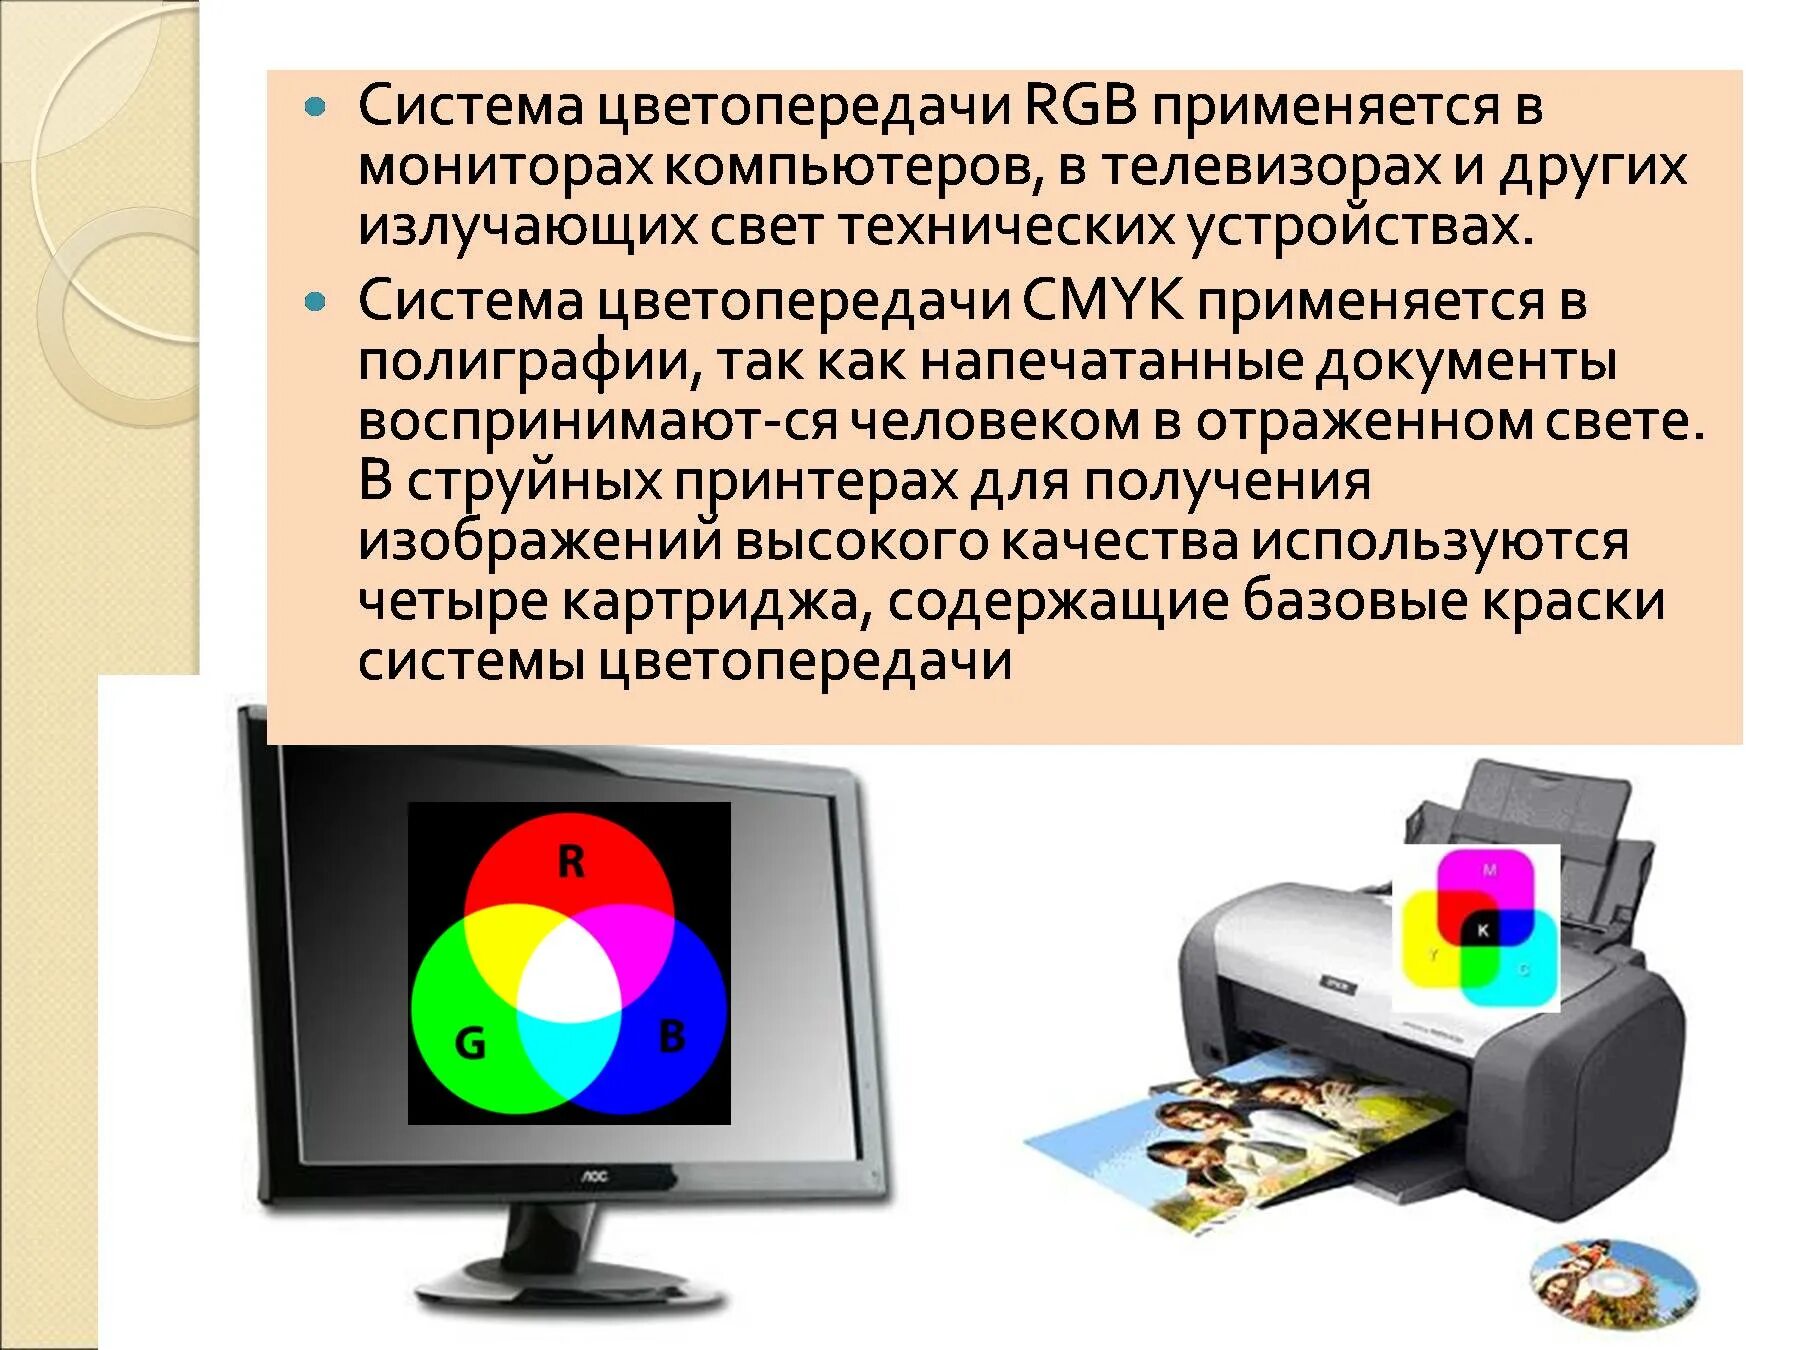 Система цветопередачи RGB. Система цветопередачи CMYK применяется в полиграфии. Формирование цветов в системе цветопередачи RGB. Цвета в информатике.